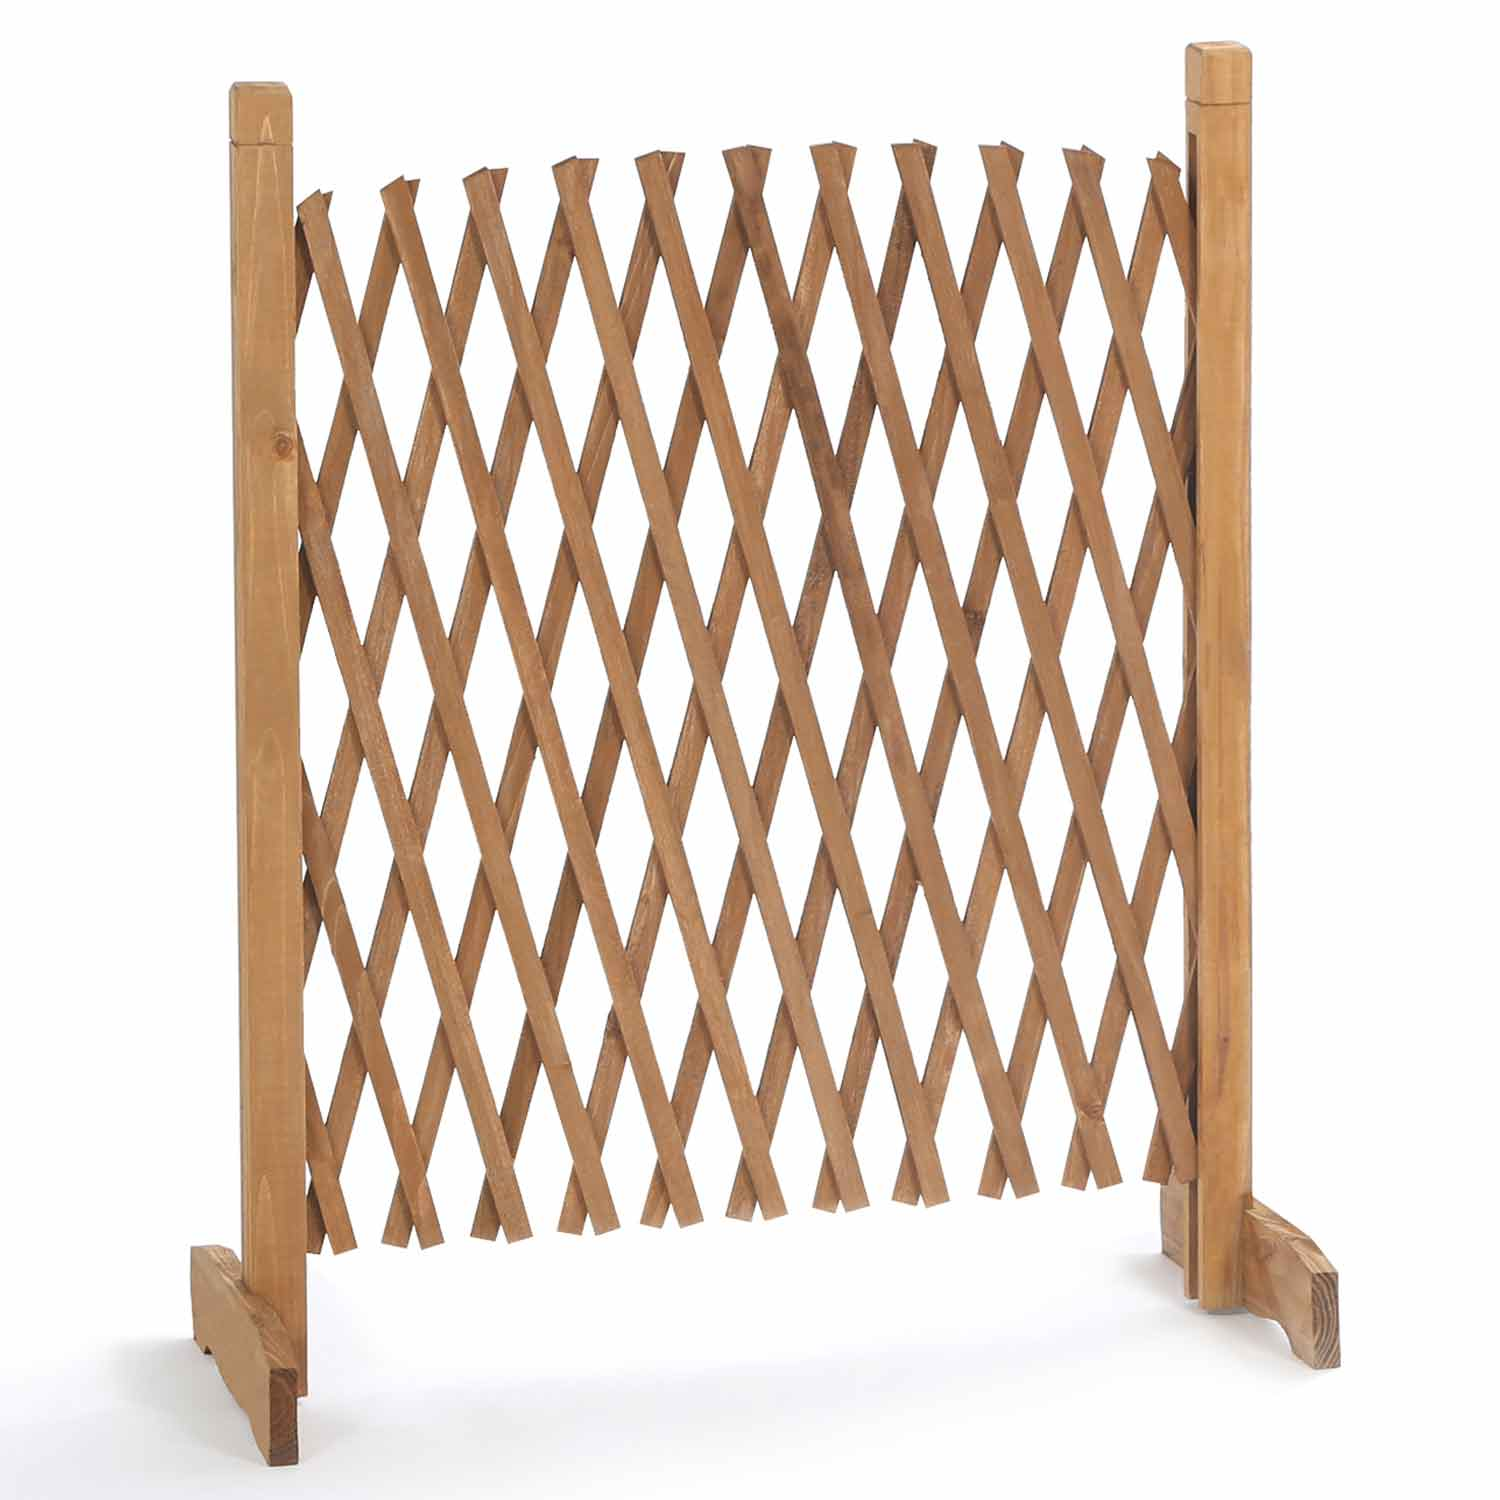 Protection canapé, la barrière extensible en bois. - Ulule